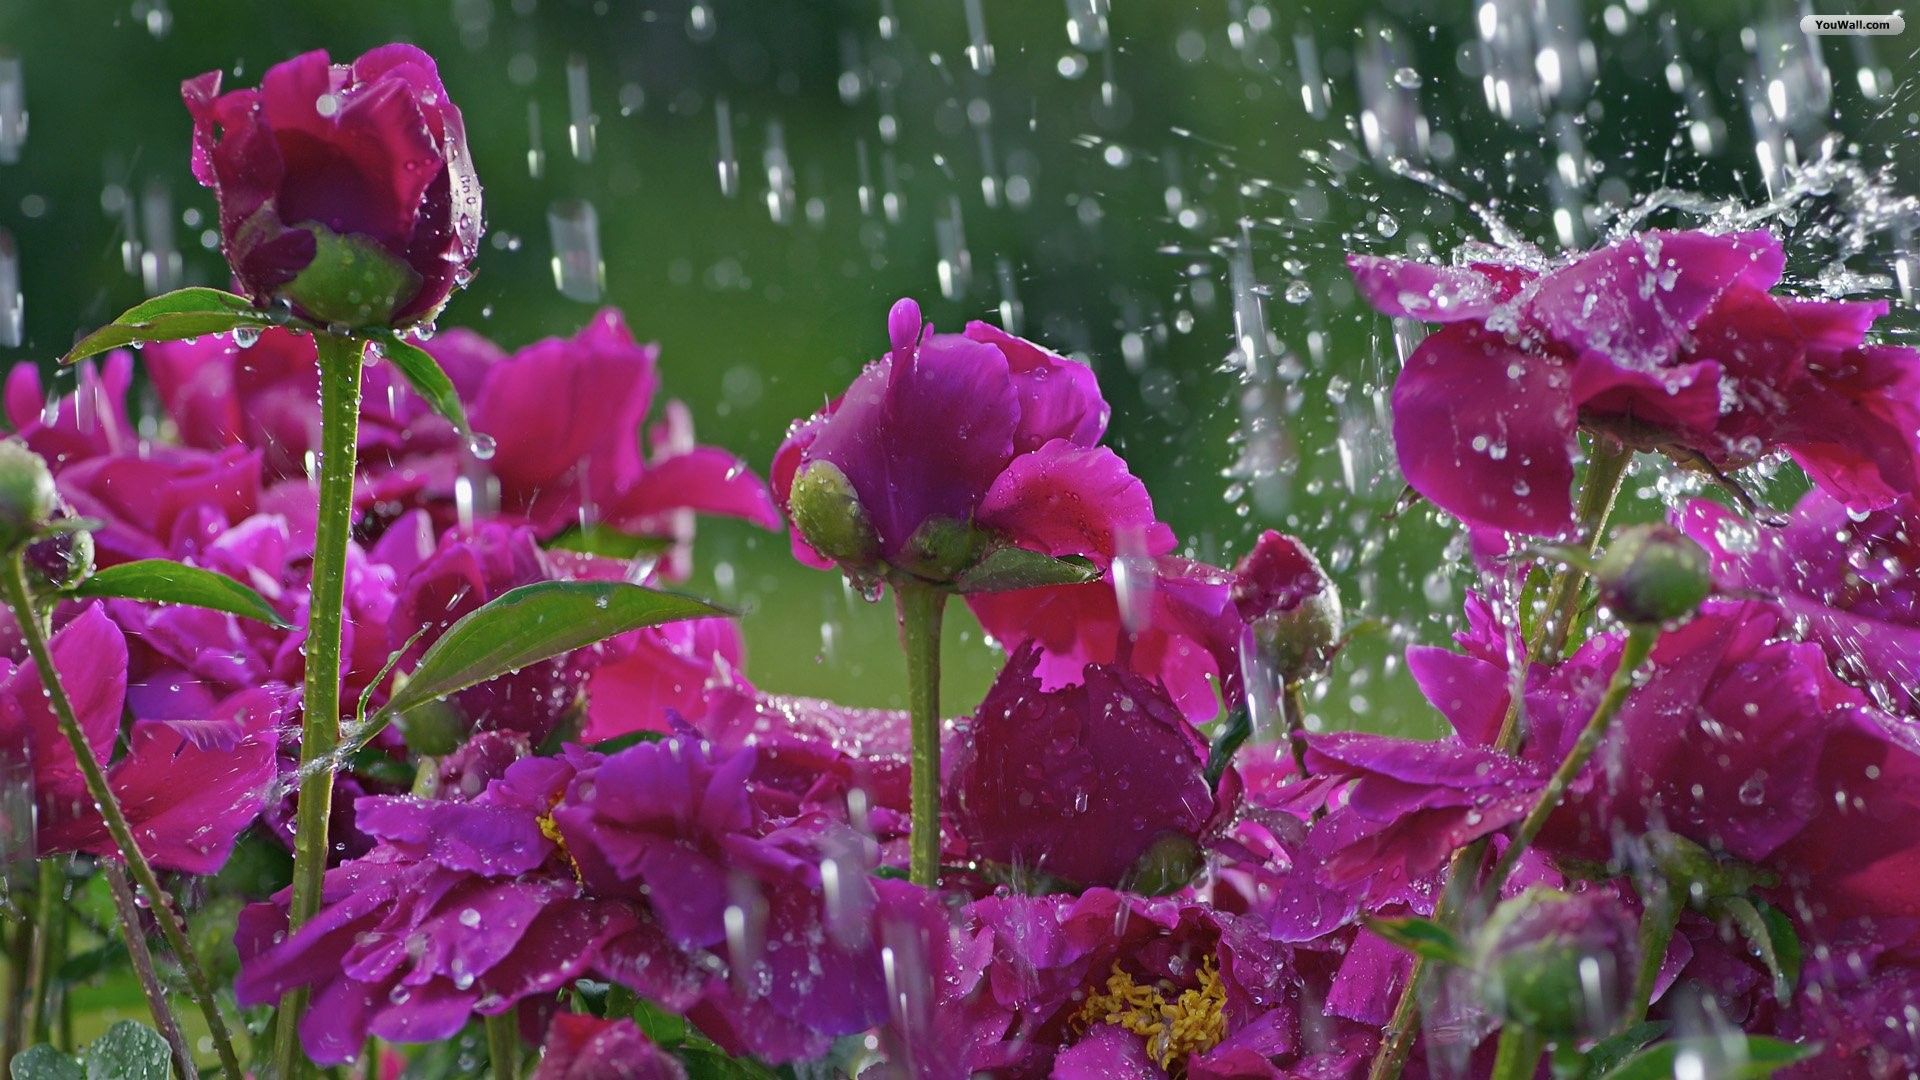 عکس ناز و خوشگل گل های صورتی زیبا در بارش باران